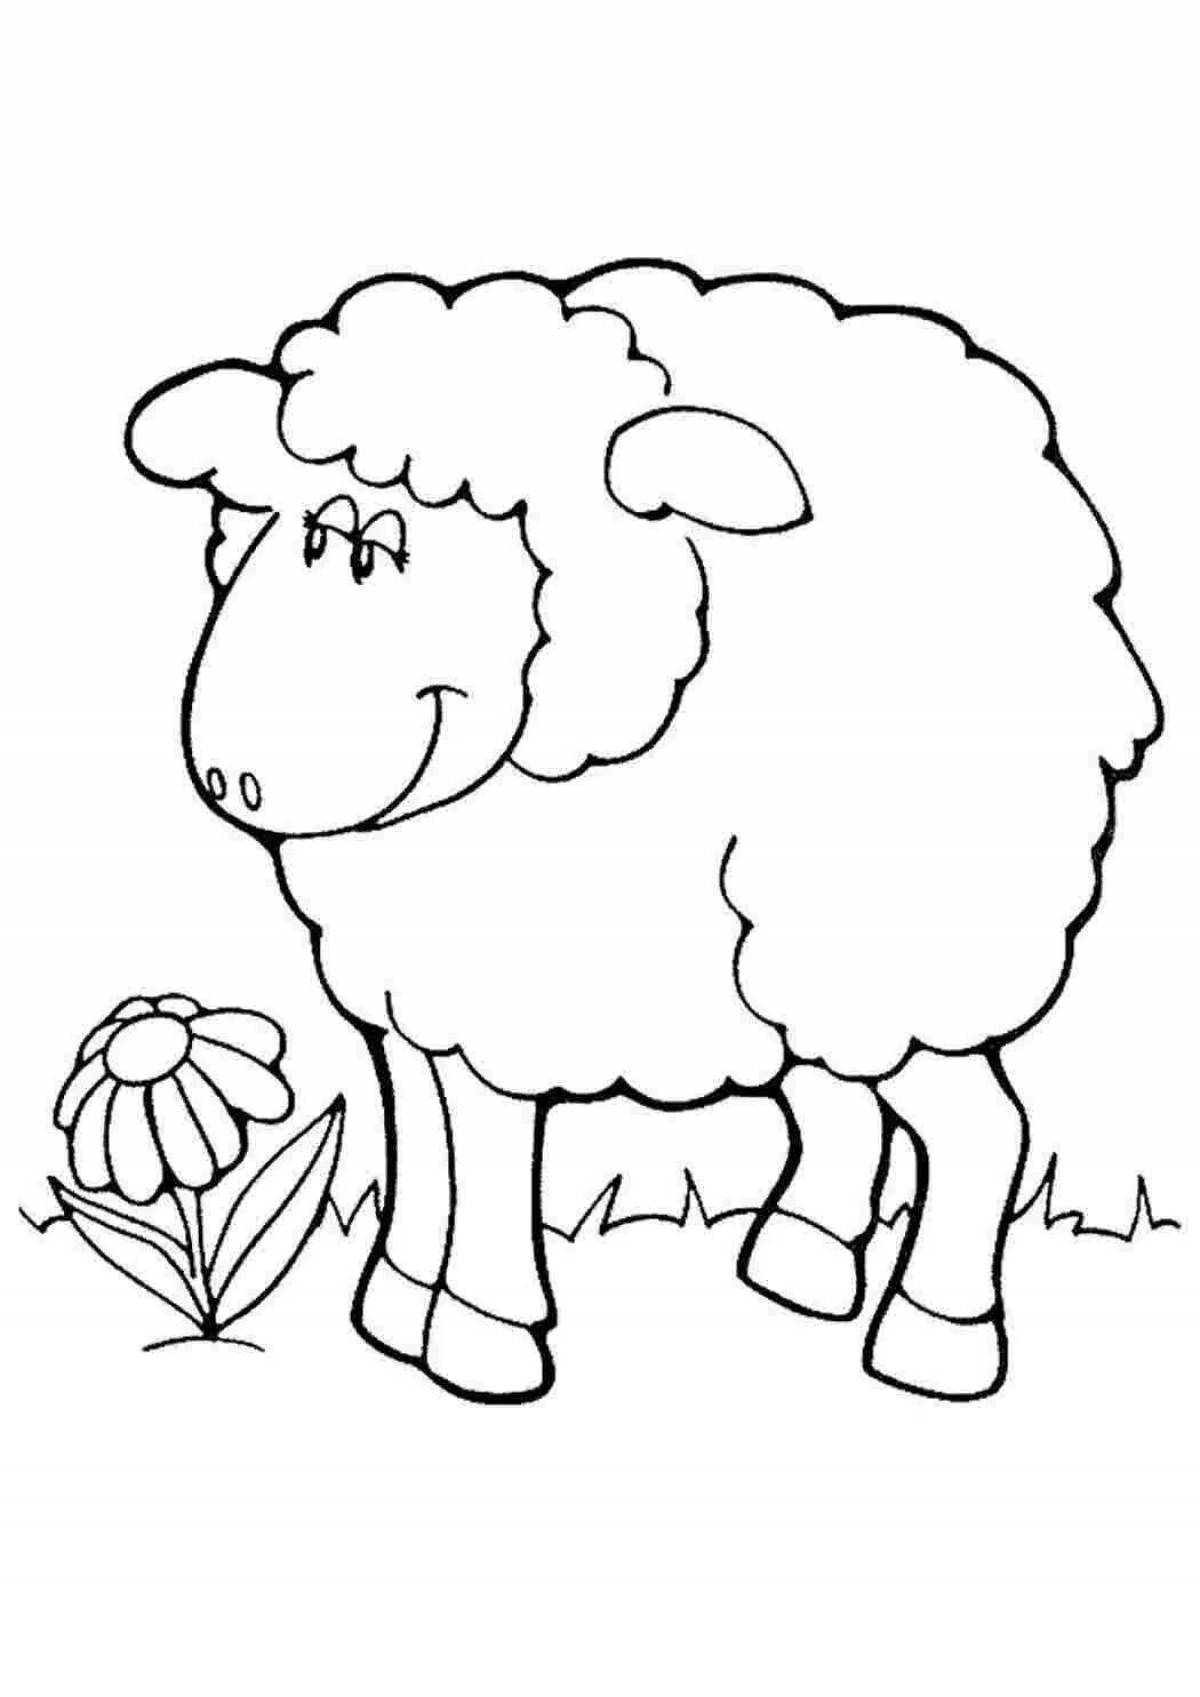 Веселая раскраска овец для детей